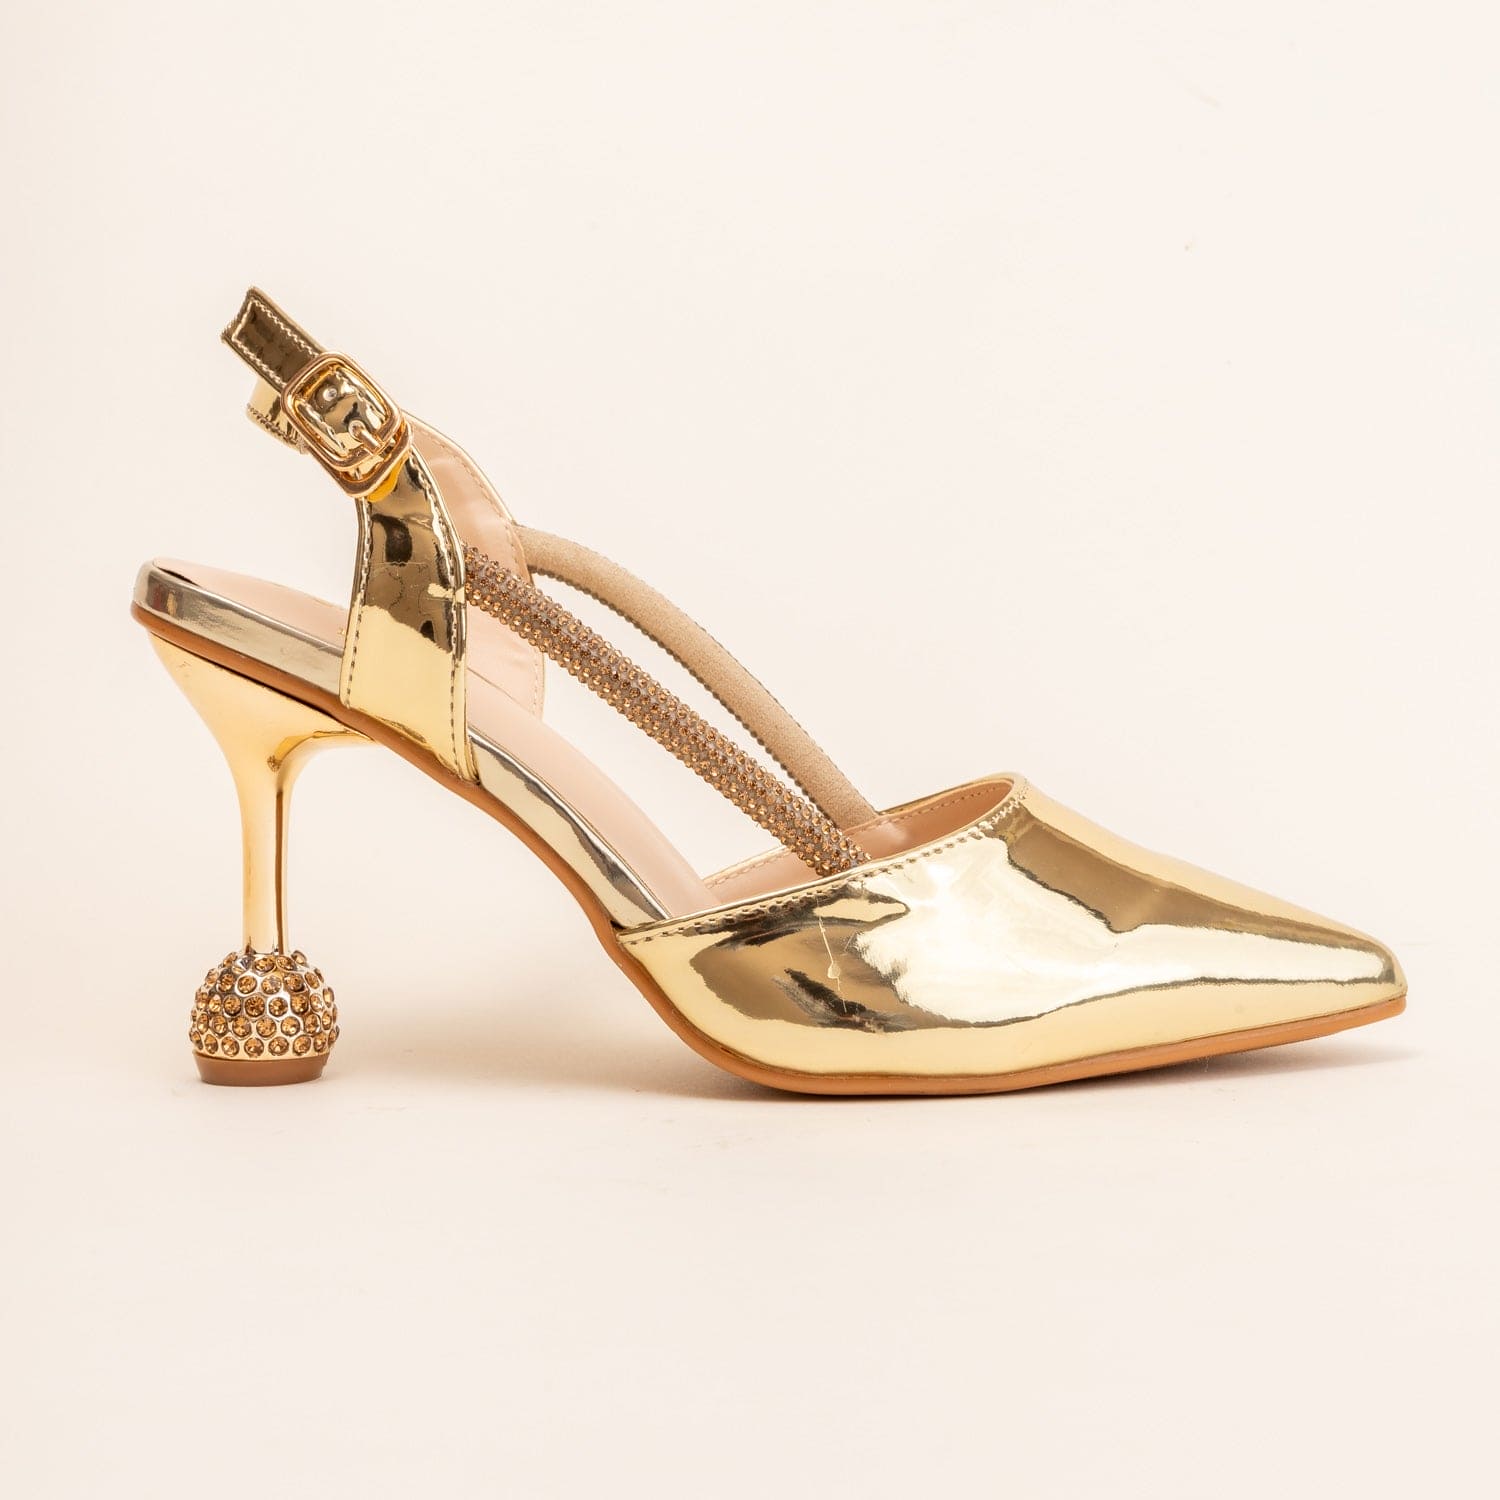 GALA GLINT-Embellished sandal in-Gold.